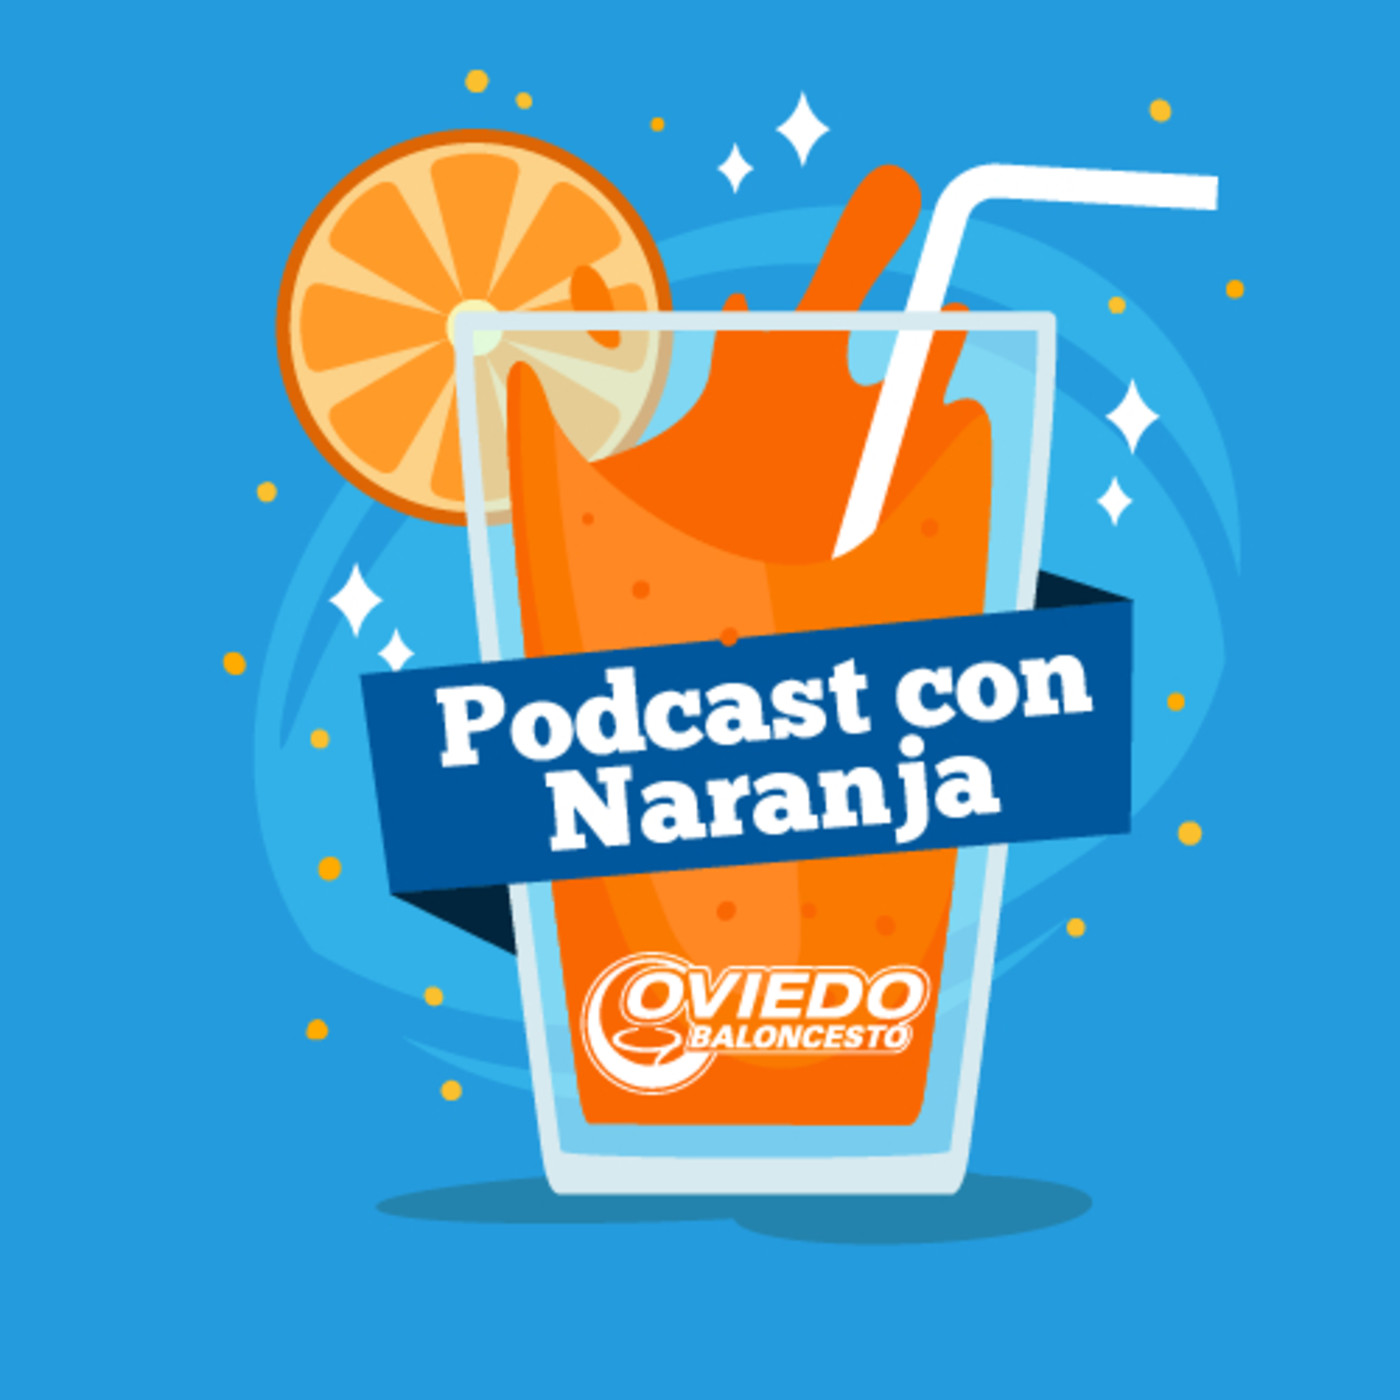 Podcast con naranja, el podcast del OCB